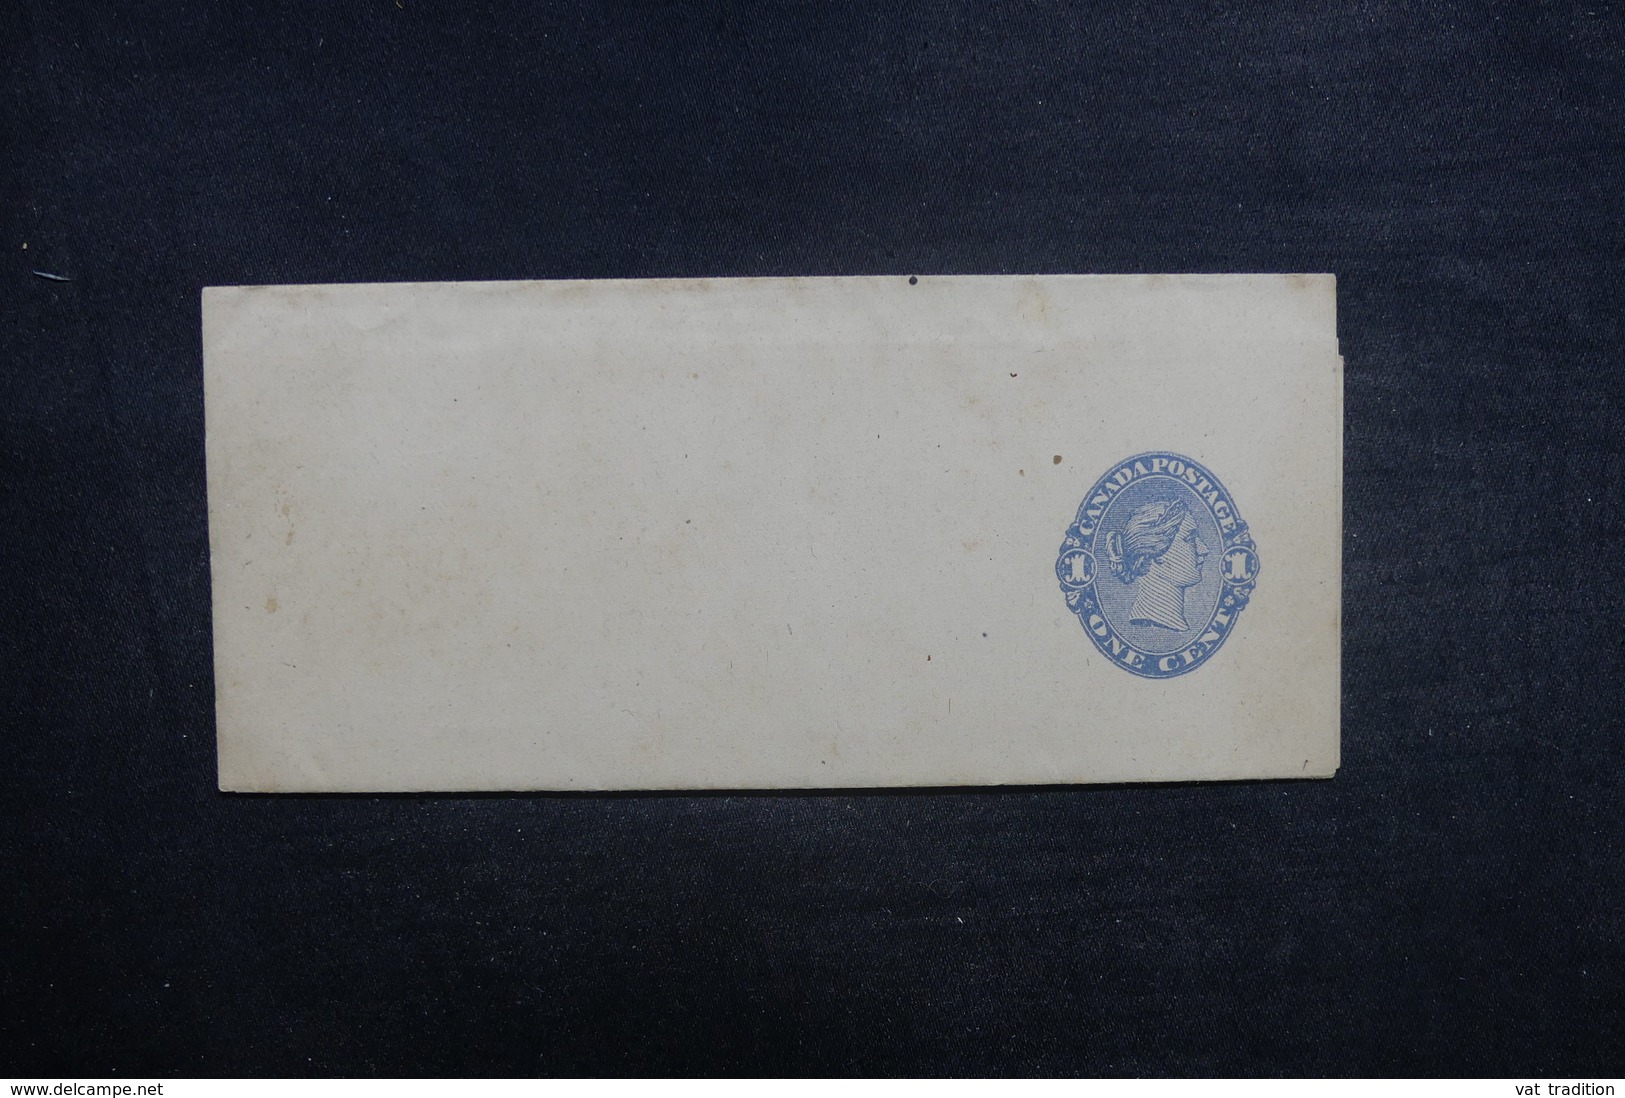 CANADA - Entier Postal Non Utilisé - L 37889 - 1860-1899 Règne De Victoria